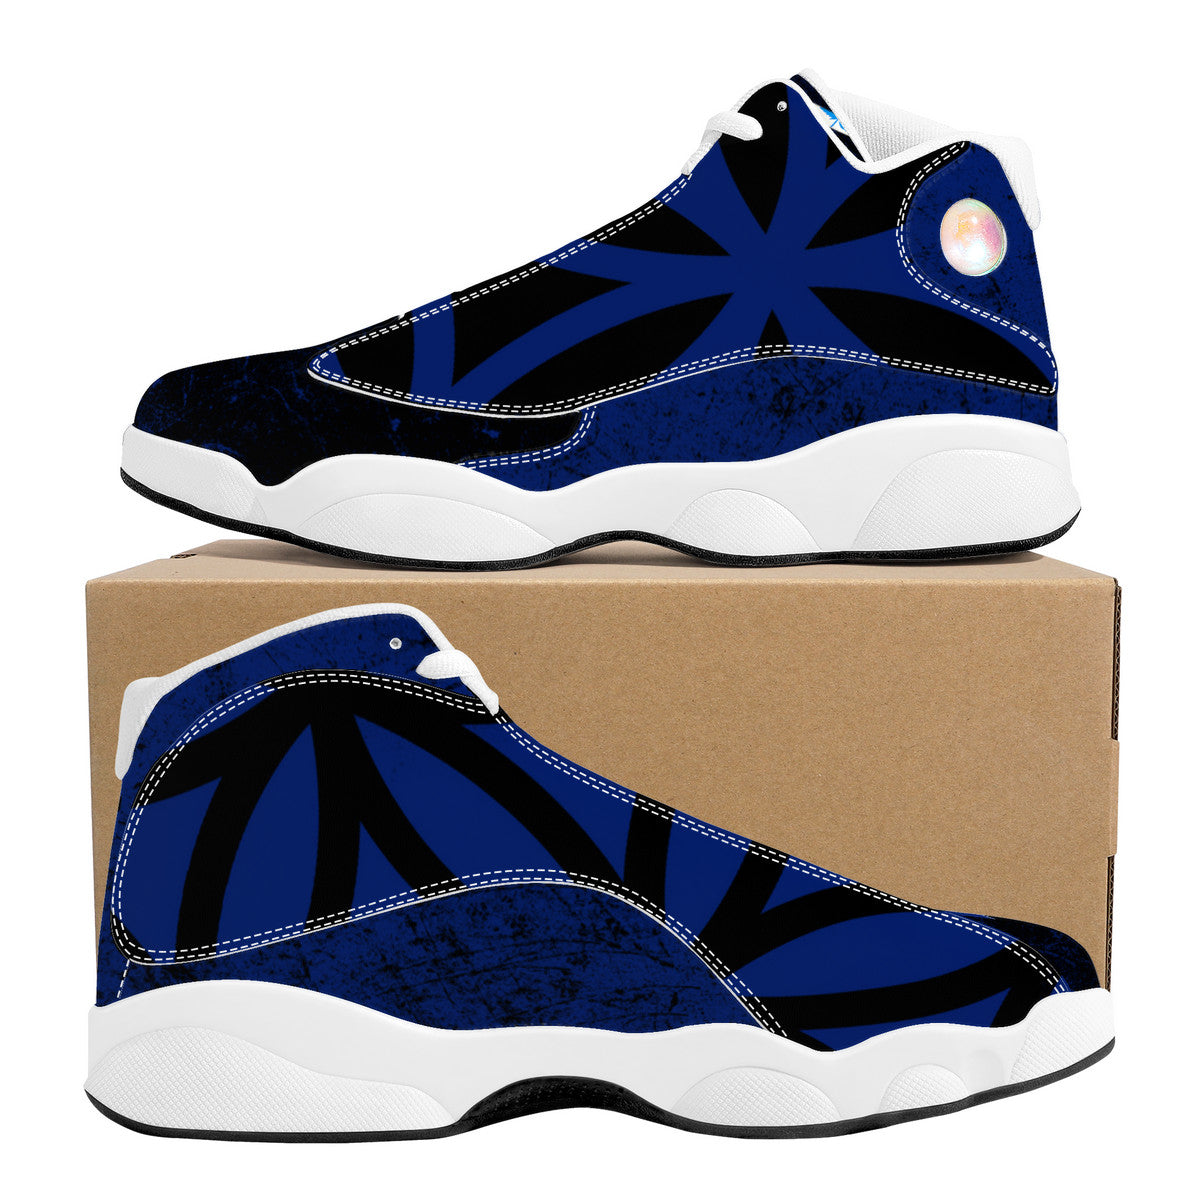 RVT Basketball Shoes - Fractal Blue/Black